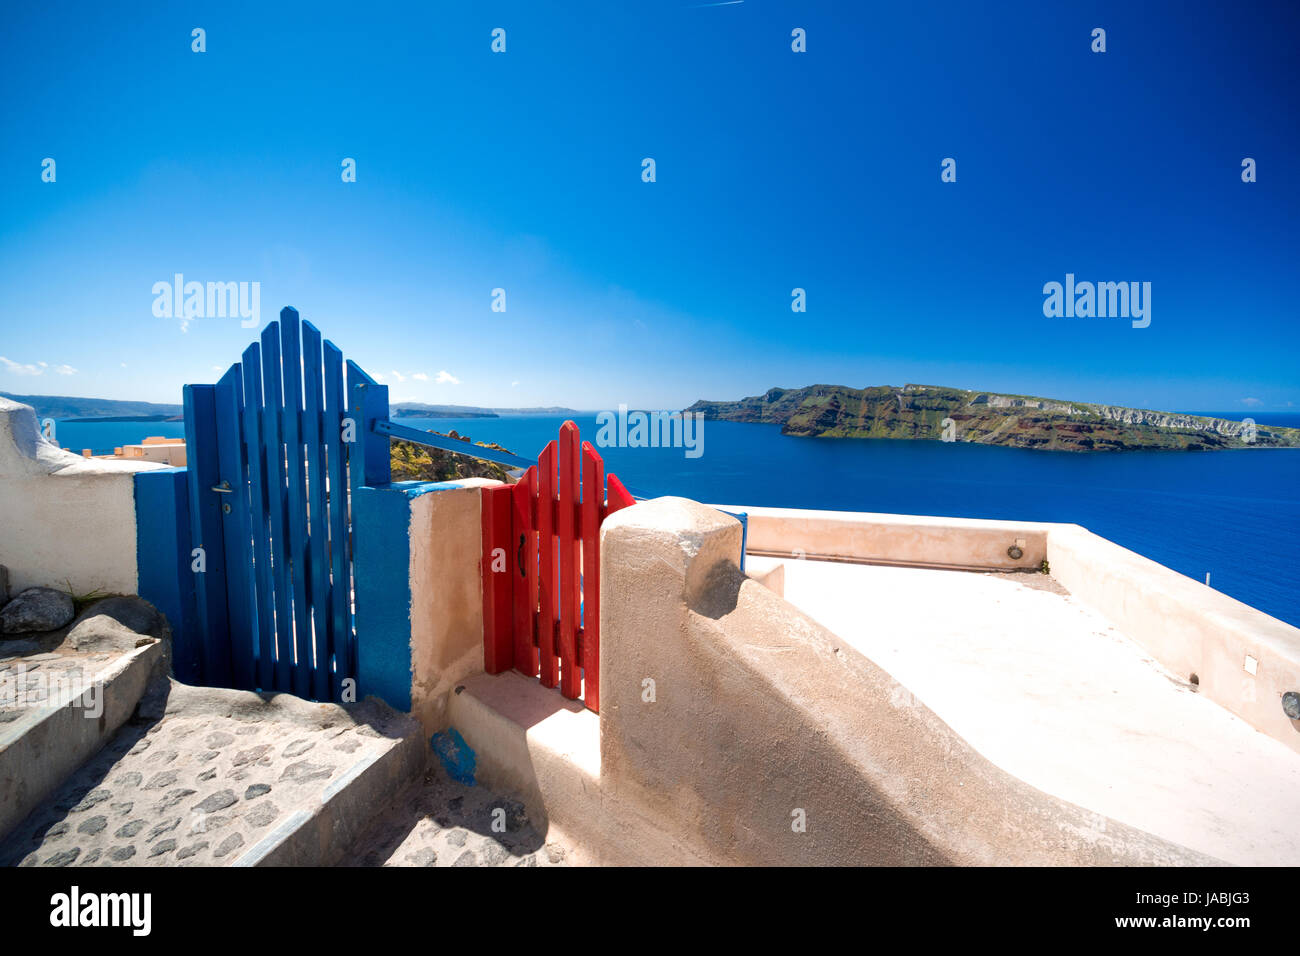 Una tradizionale porta simmetrica cantiere, ia, Santorini, Grecia. luna di miele estate egeo sullo sfondo delle Cicladi, serenità, tranquillità. Foto Stock